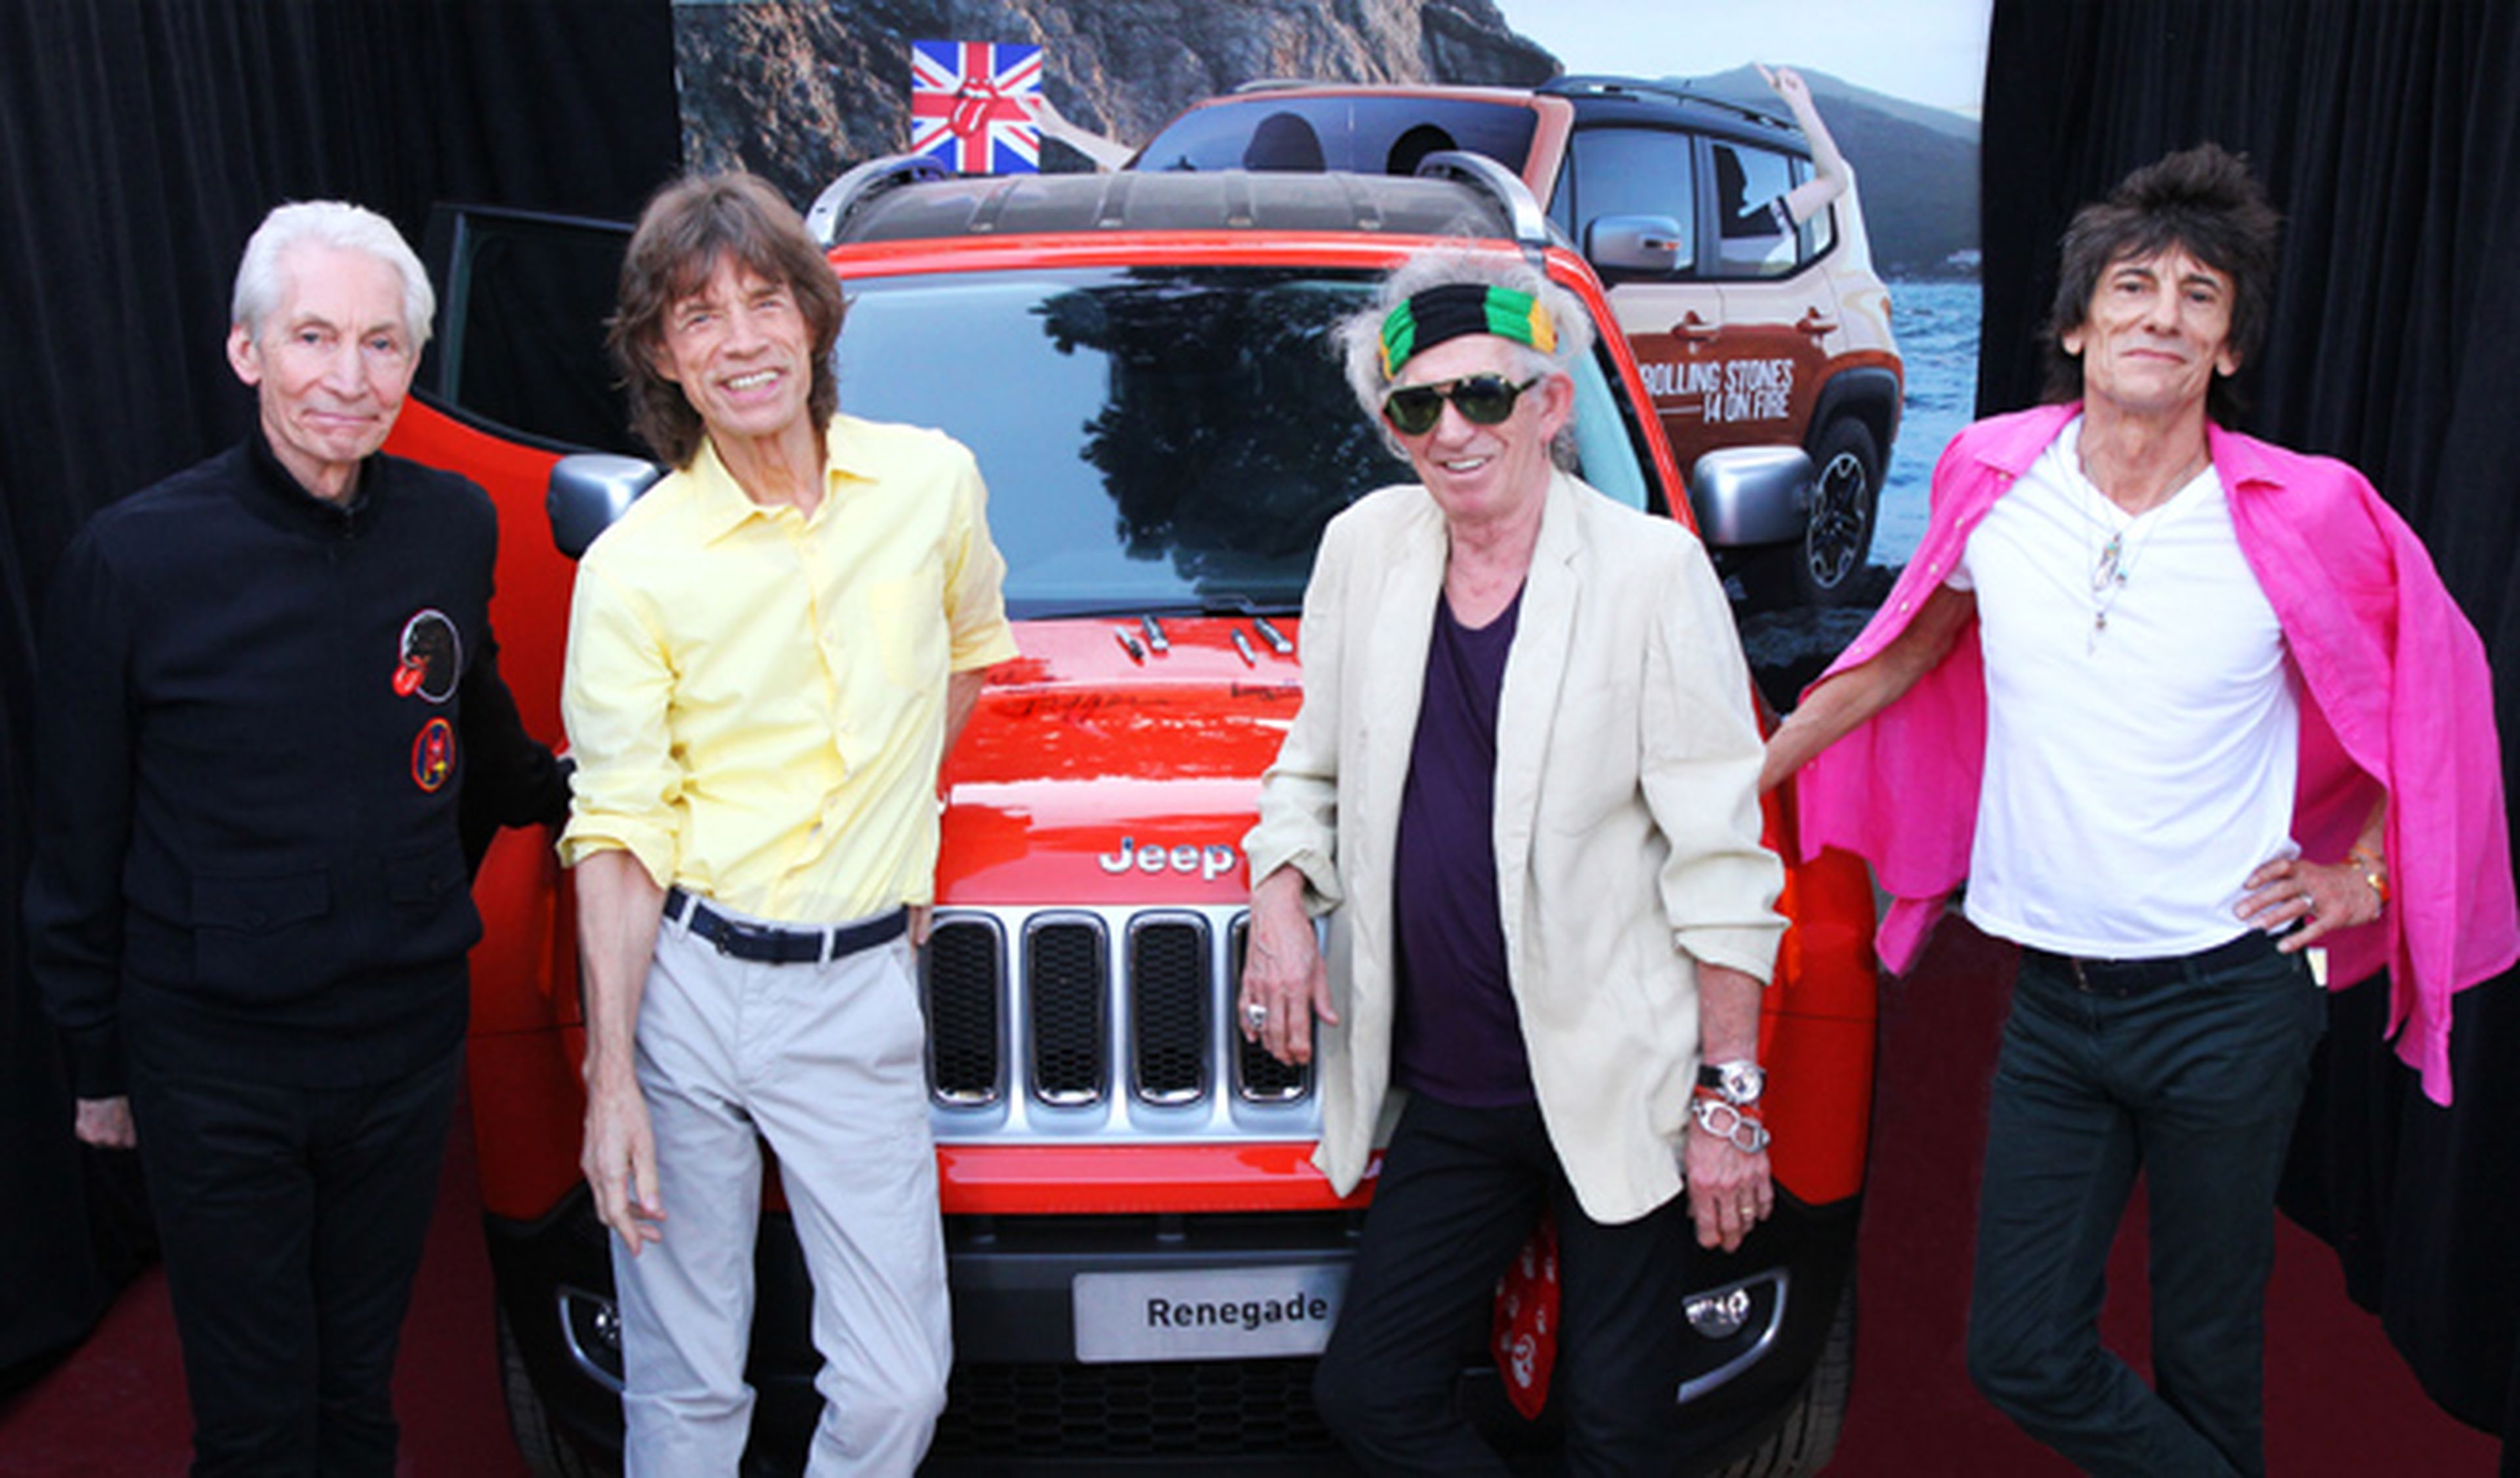 A subasta un Jeep Renegade firmado por los Rolling Stones